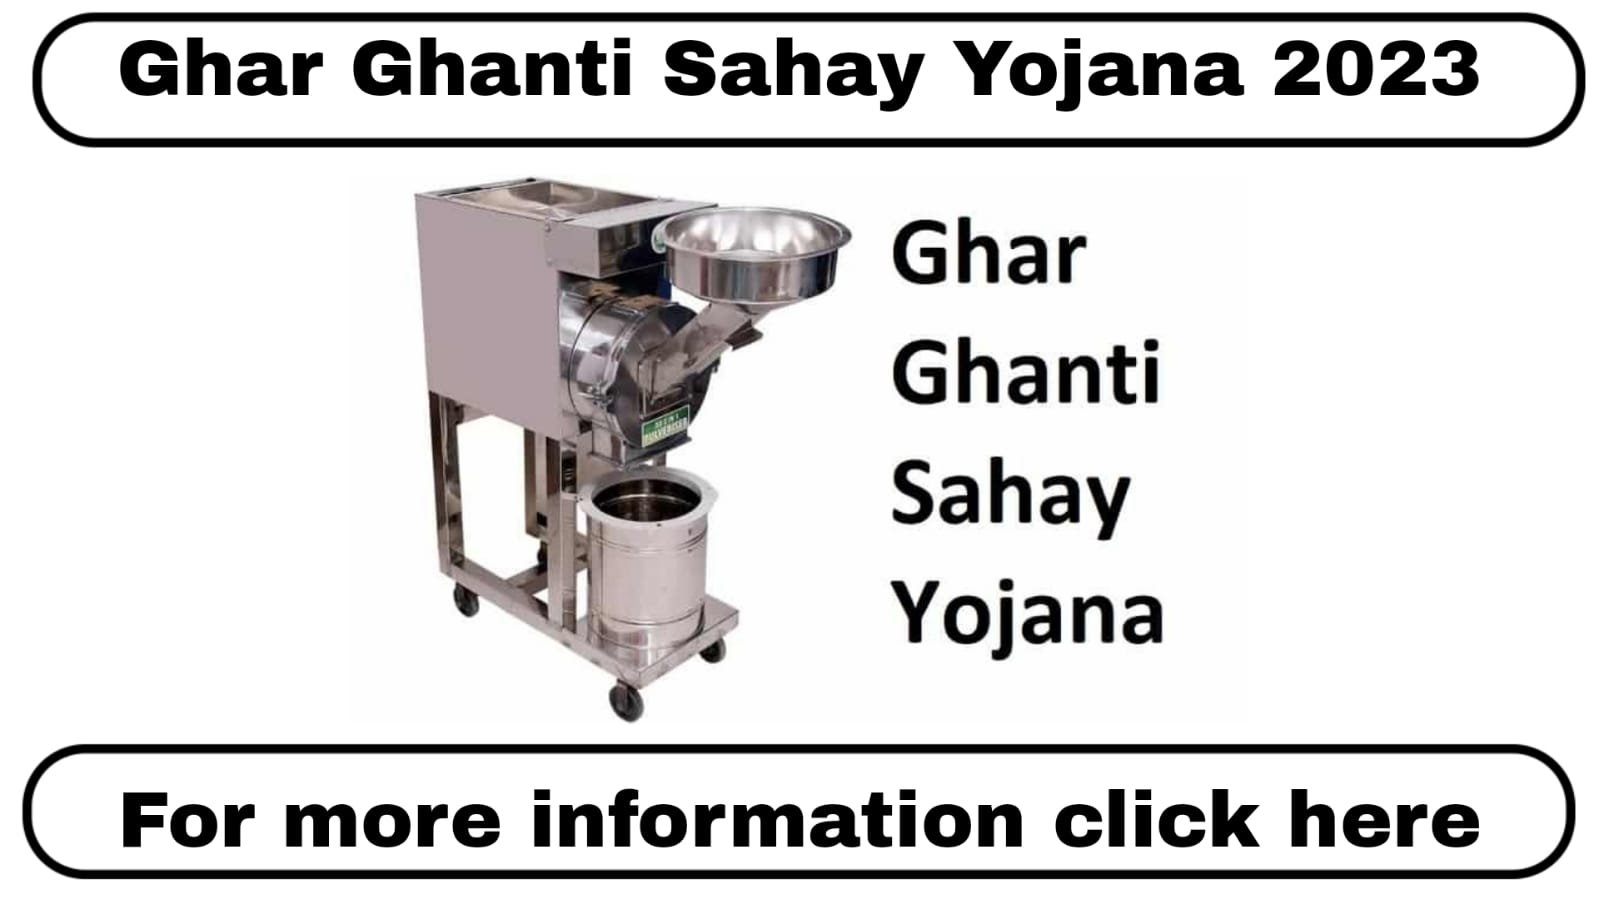 Ghar Ghanti Sahay Yojana 2023